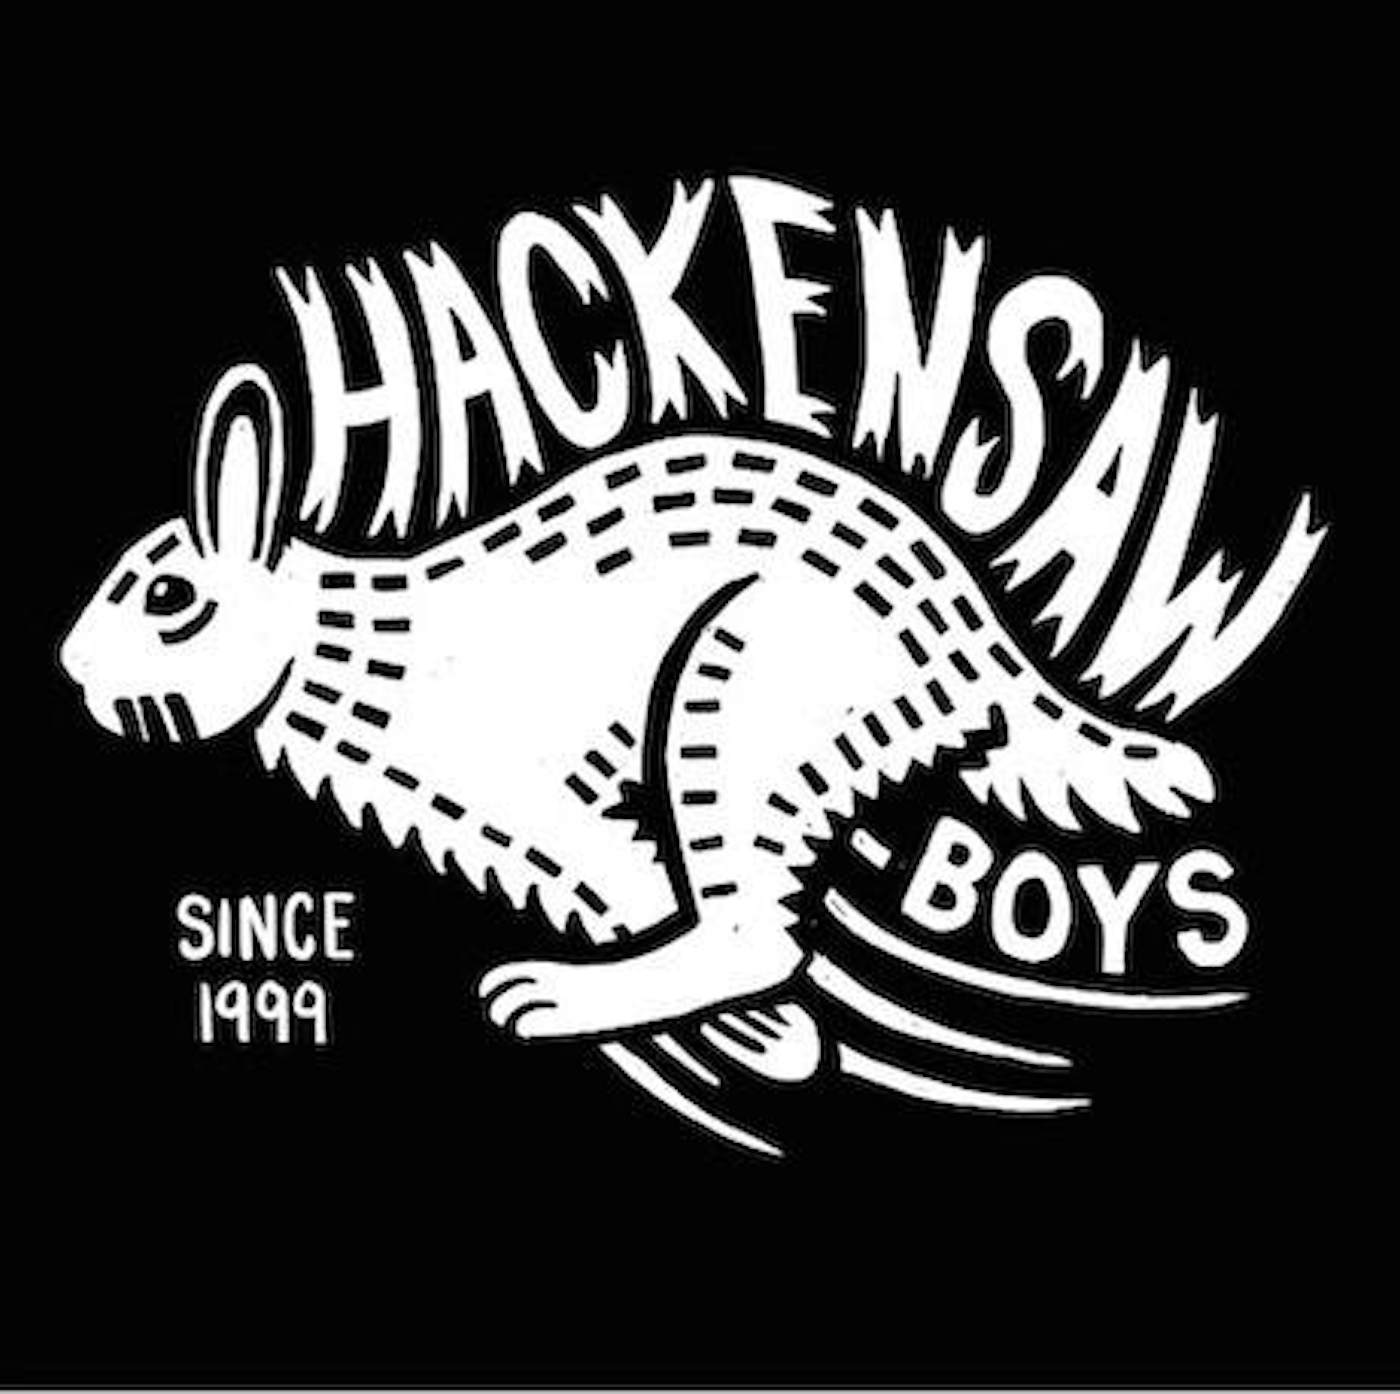 Hackensaw Boys